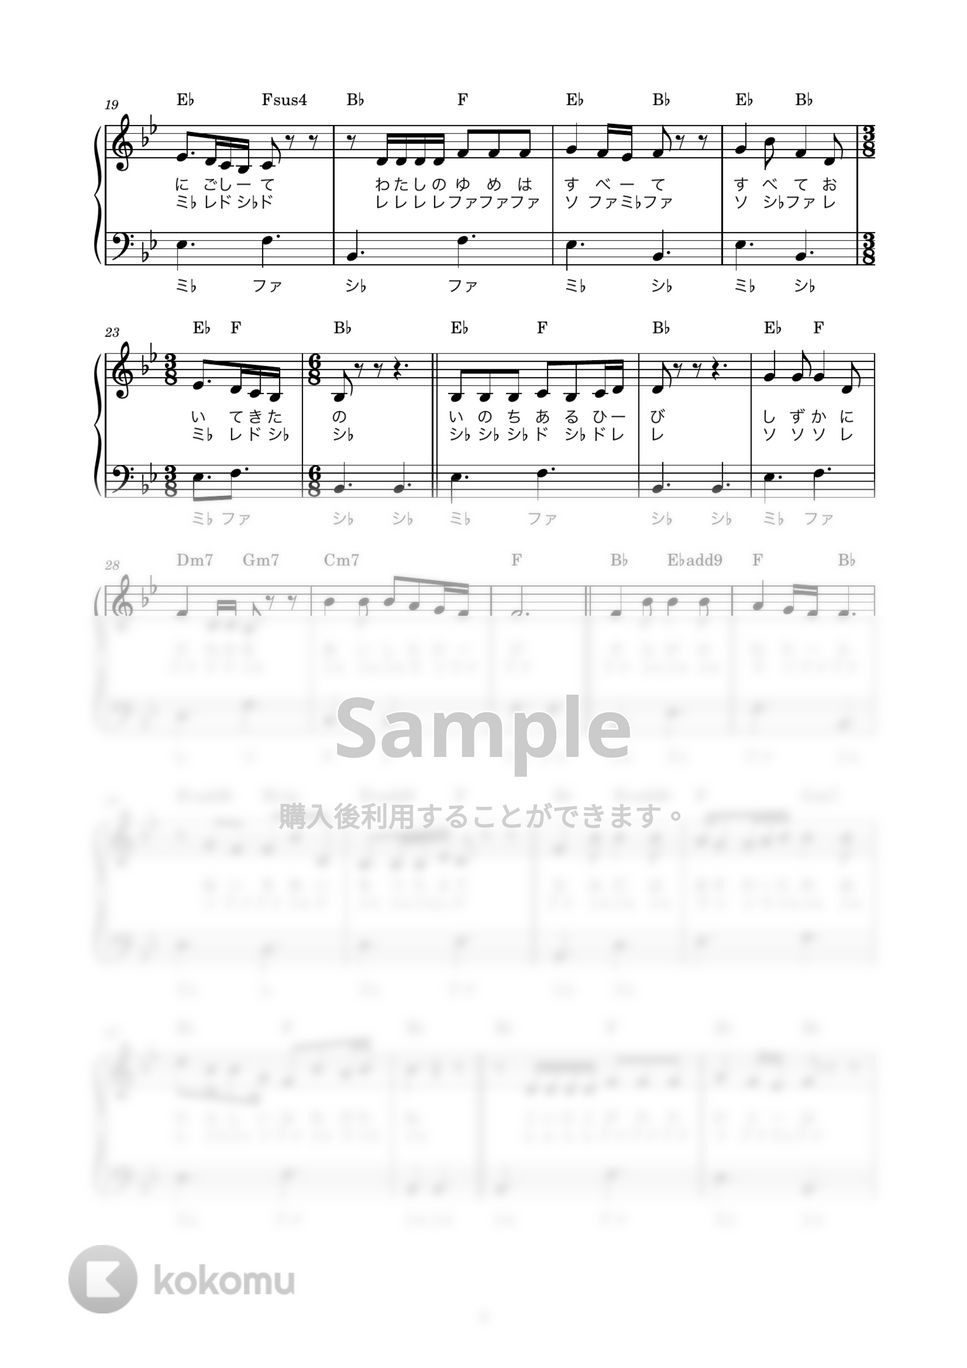 あいみょん - 愛の花 (かんたん / 歌詞付き / ドレミ付き / 初心者) by piano.tokyo